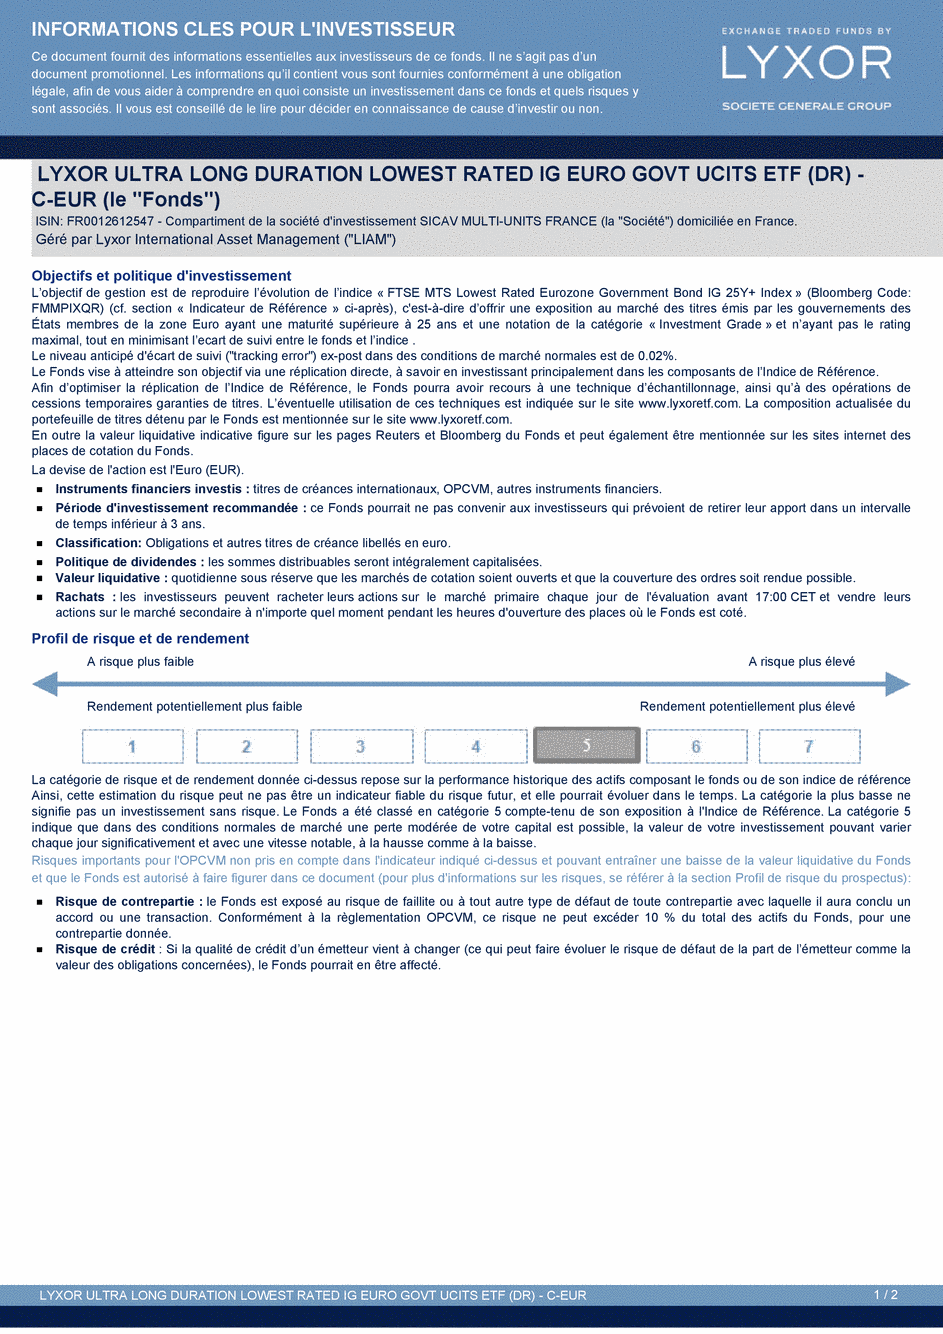 DICI LYXOR ULTRA LONG DURATION LOWEST RATED IG EURO GOVT UCITS ETF (DR) Part C-EUR - 26/03/2015 - Français